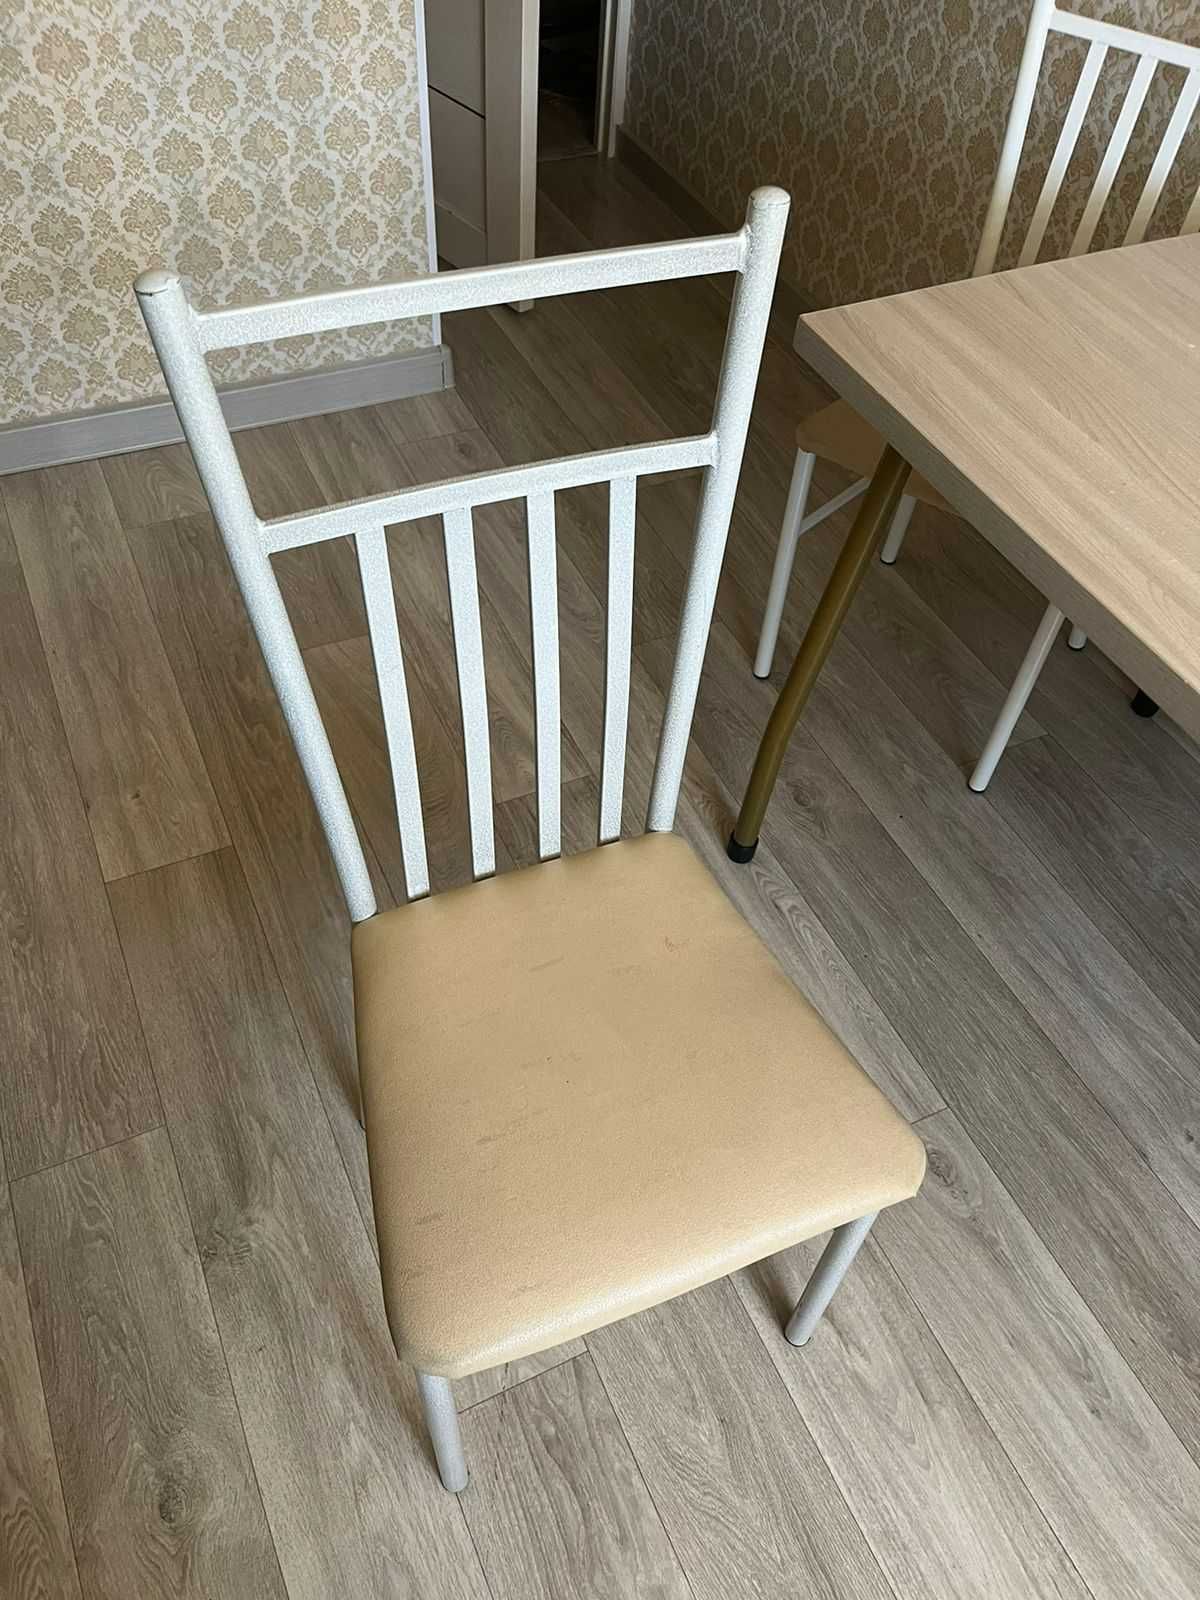 стол продается 4 стуля почти как новый